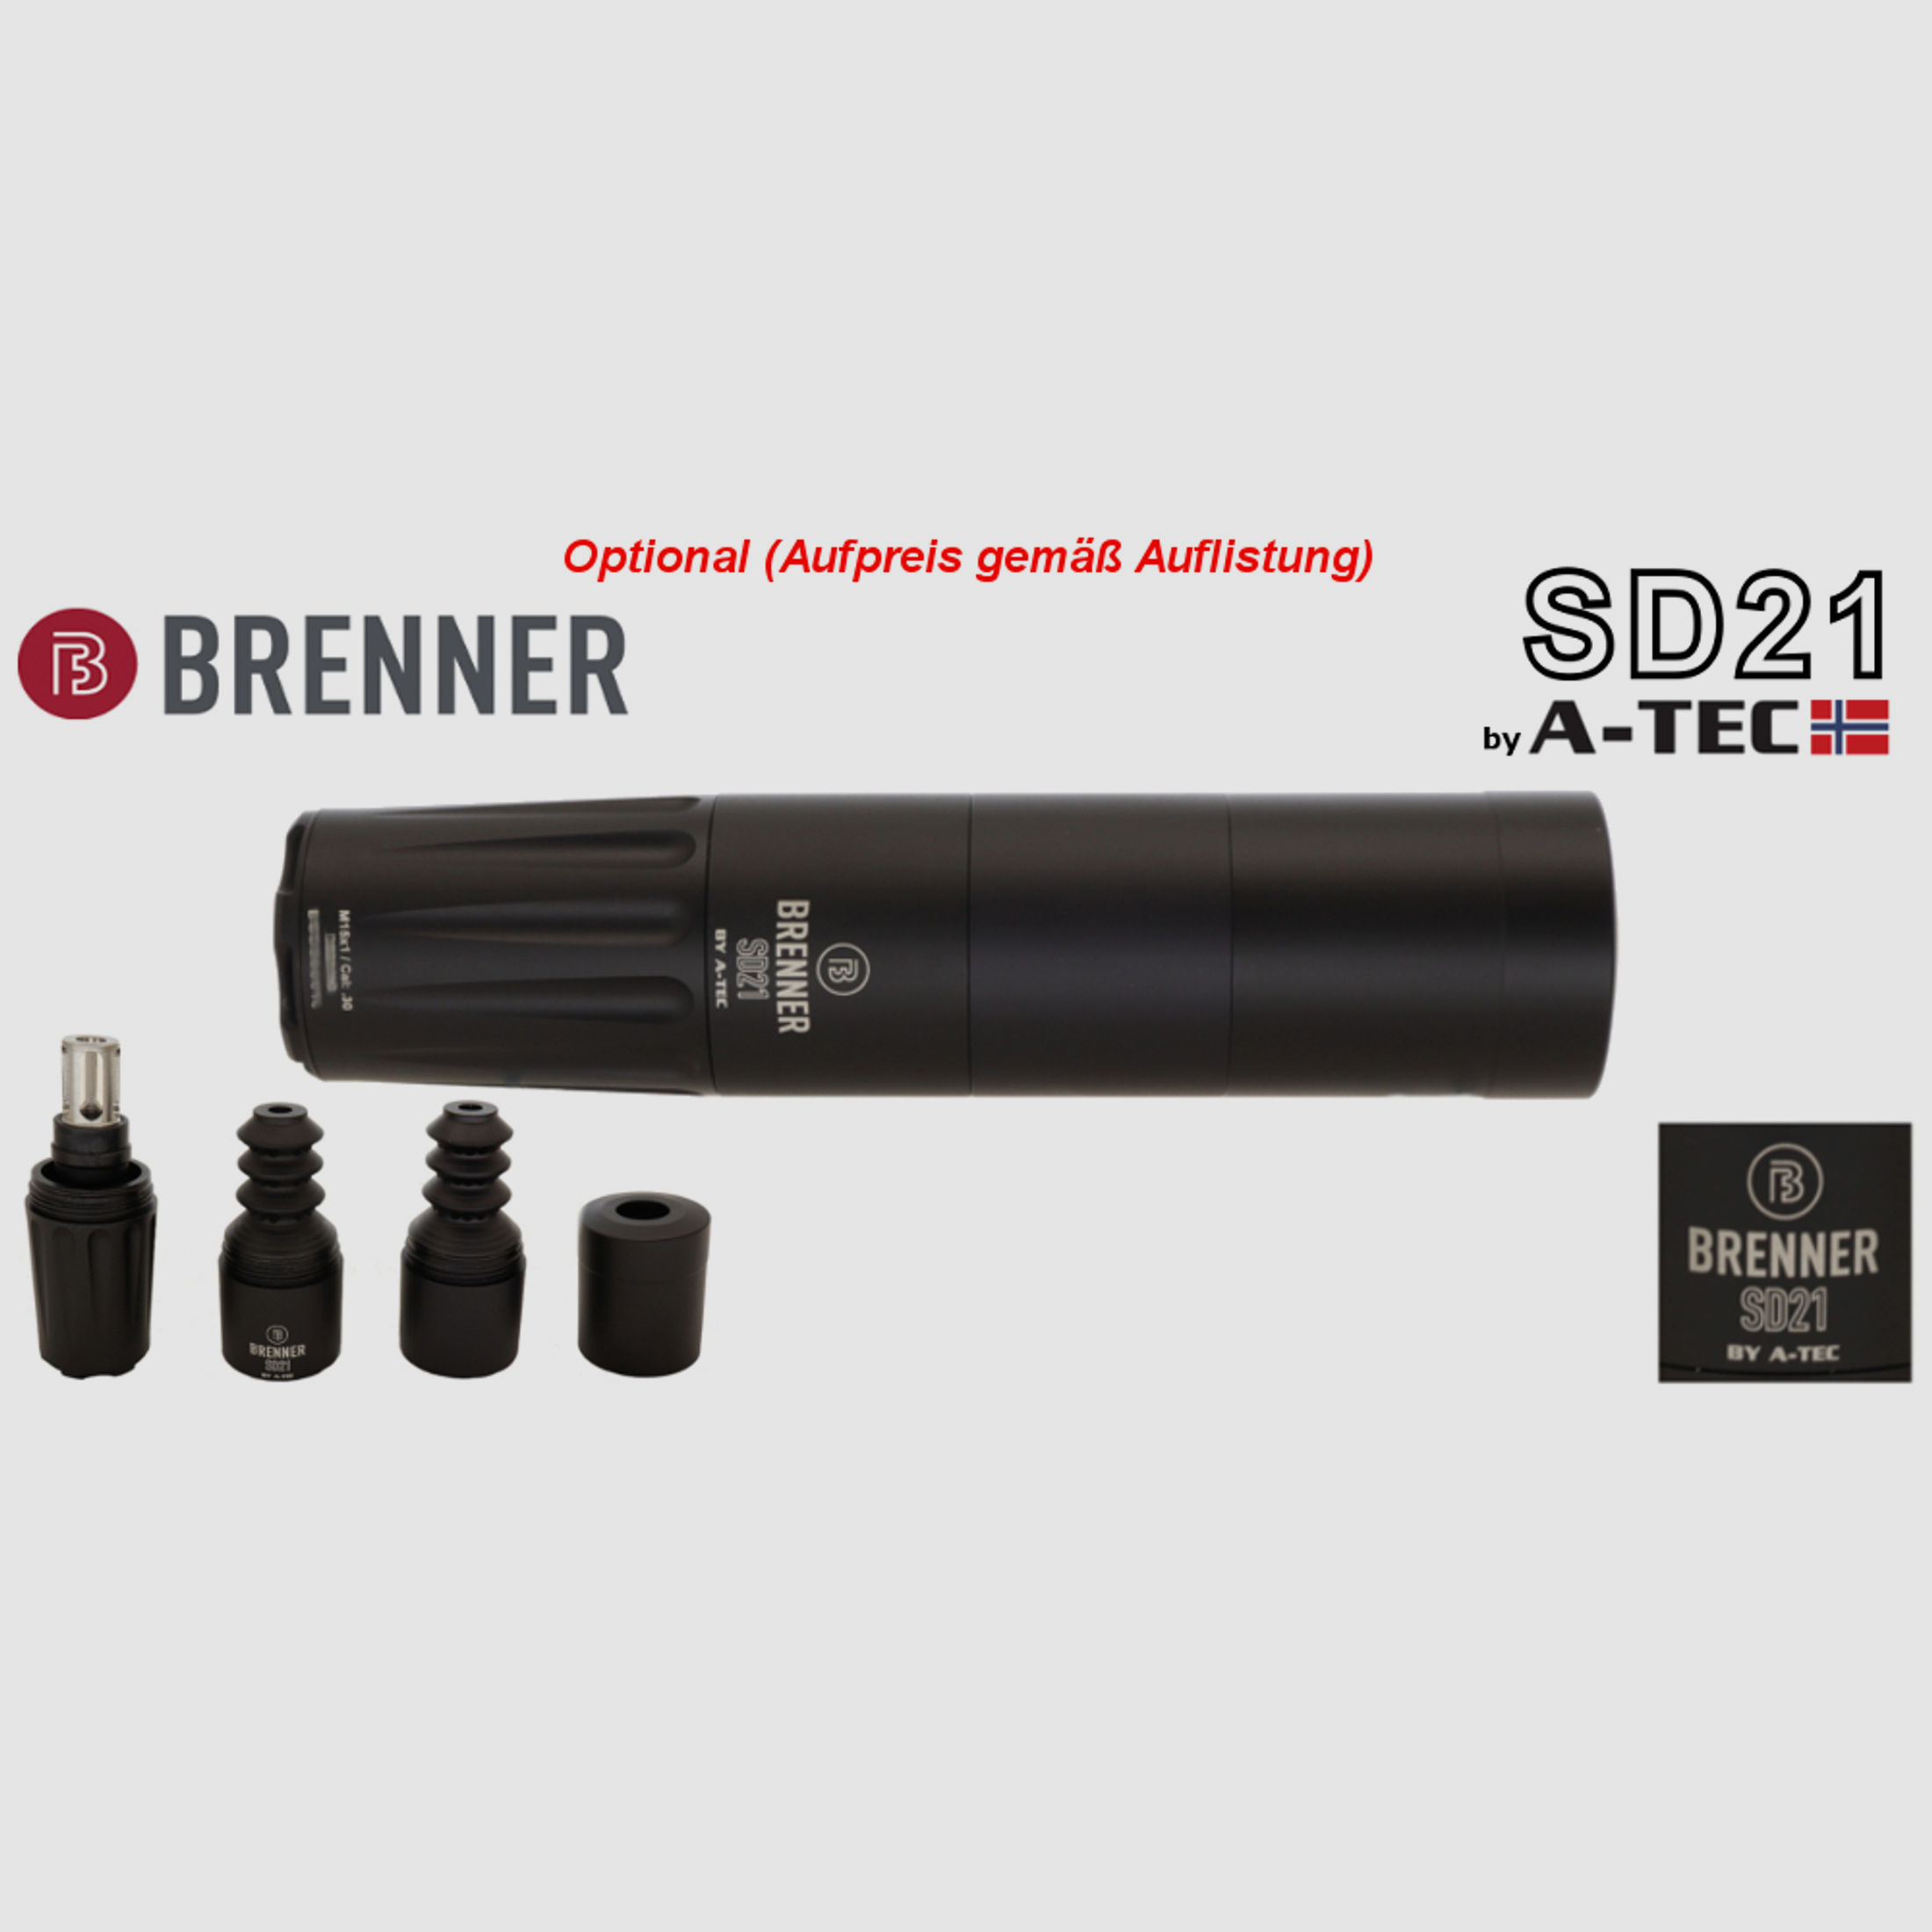 Brenner Komplettpaket: BR20 B&H Prohunter Lochschaft mit Zeiss 3-12x56 fertig montiert (Art.Nr.: BR20PHP2) Finanzierung möglich